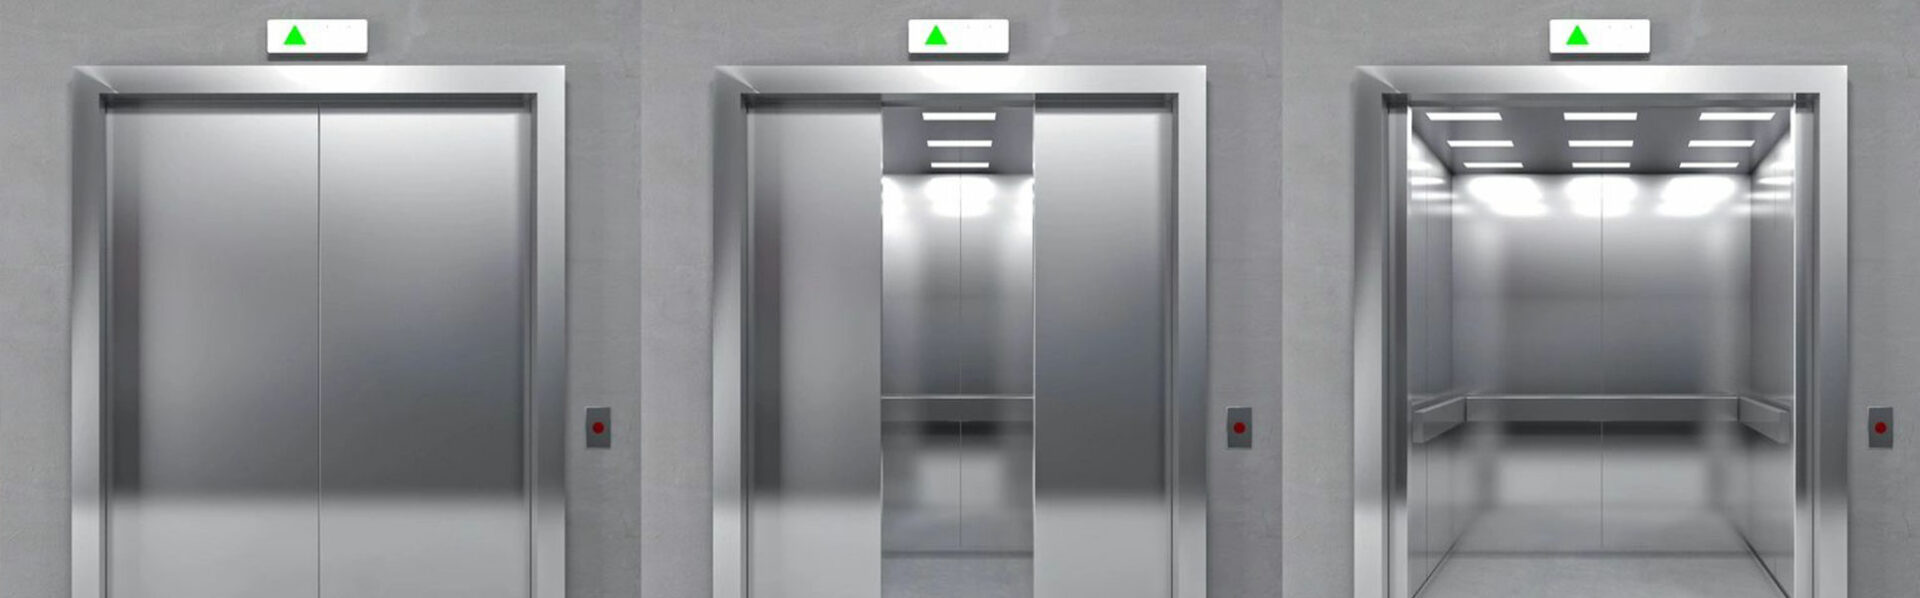 Commercial Elevators Sales Service Florida